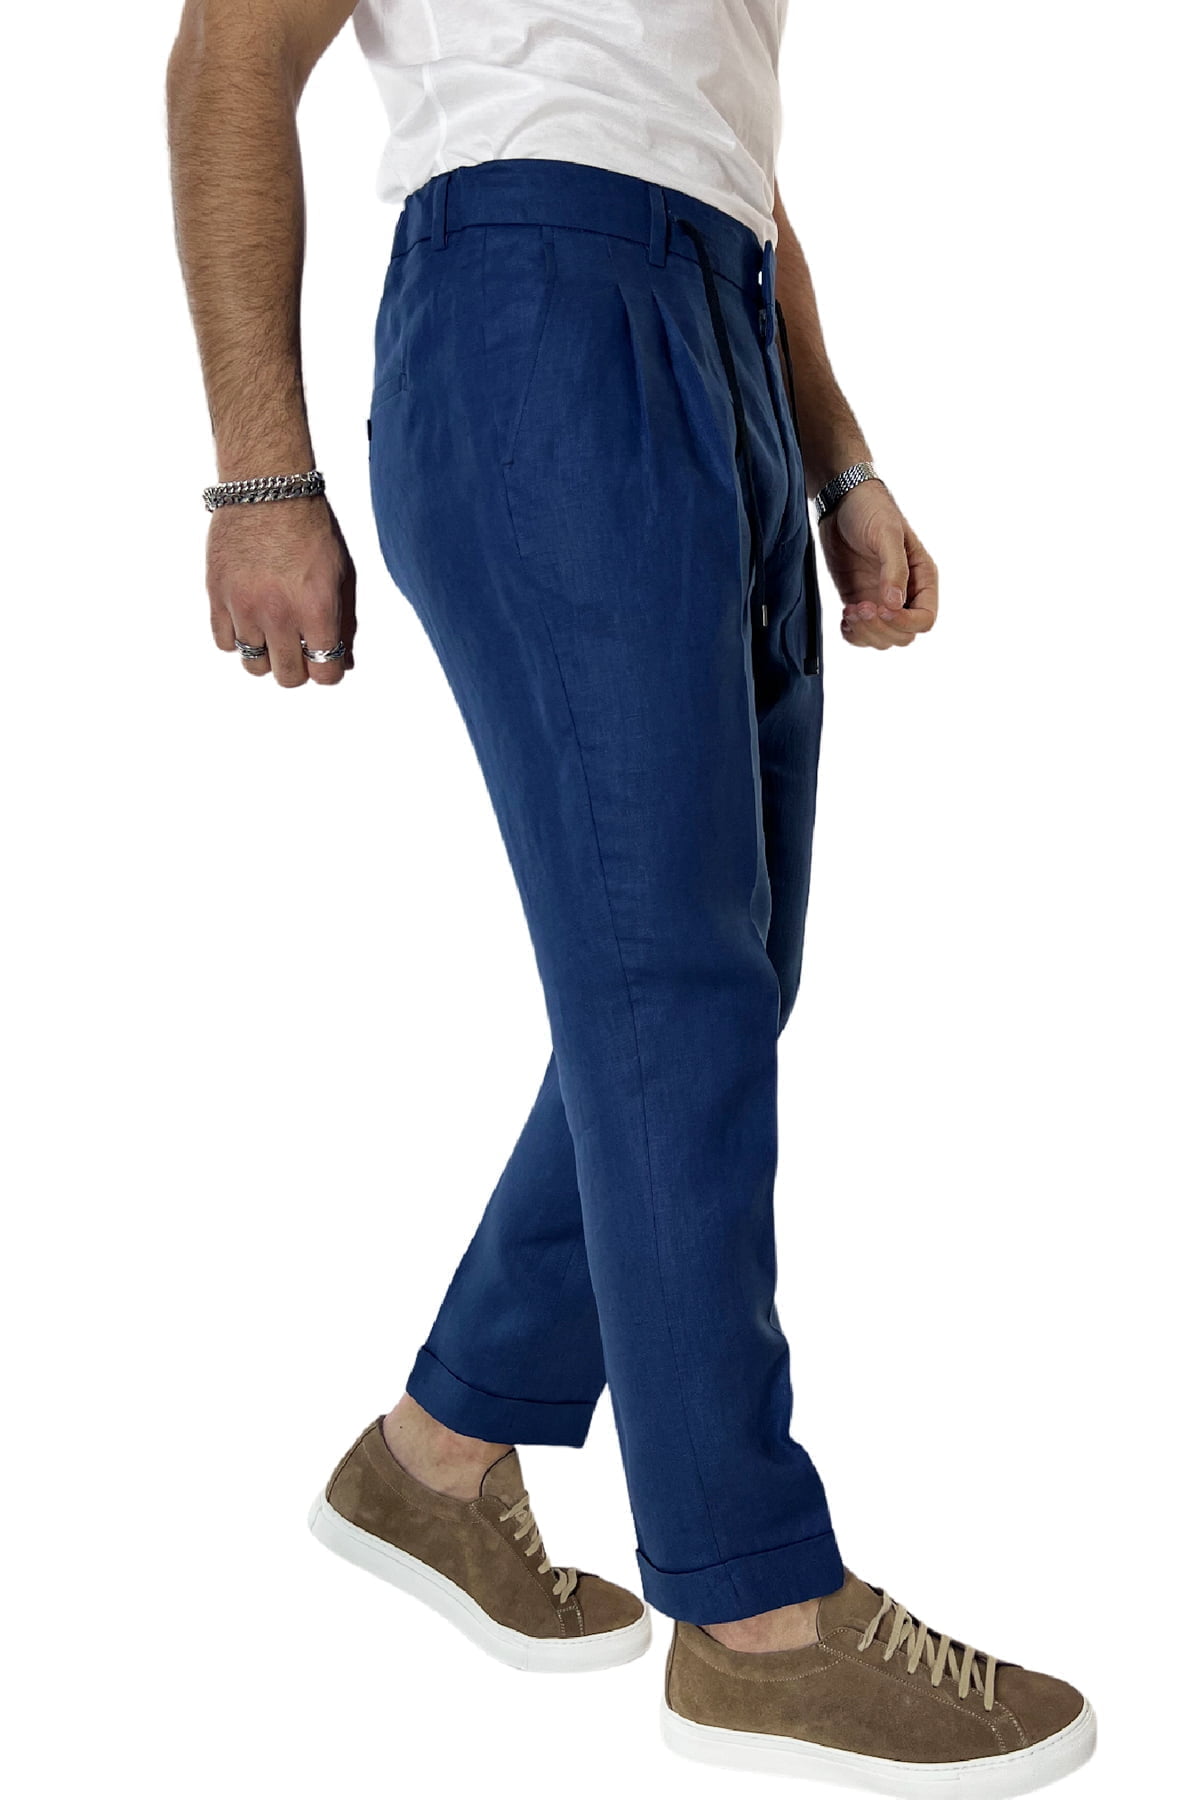 Pantalaccio uomo blu in lino 100% tasca america con doppia pence e laccio in vita risvolto 4cm